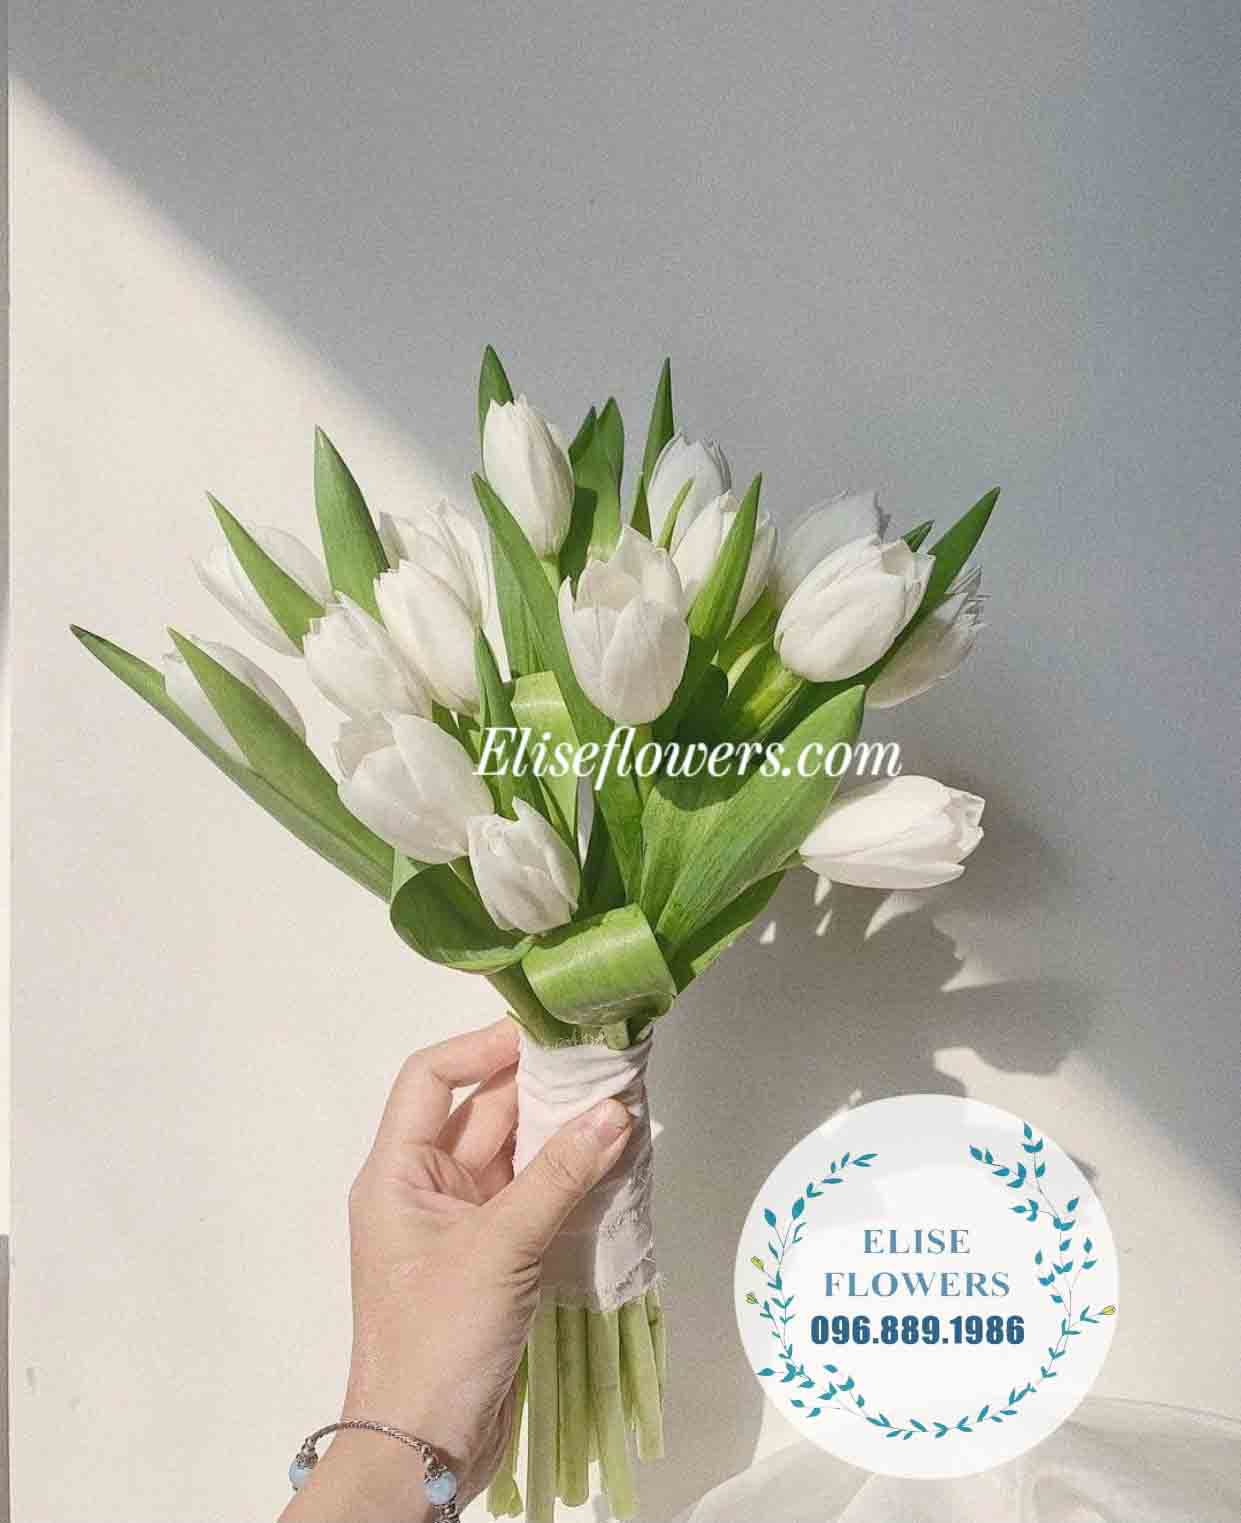 Bó hoa cưới hoa tulip trắng - Hoa cưới cầm tay cô dâu đẹp tại Eliseflowers.com 